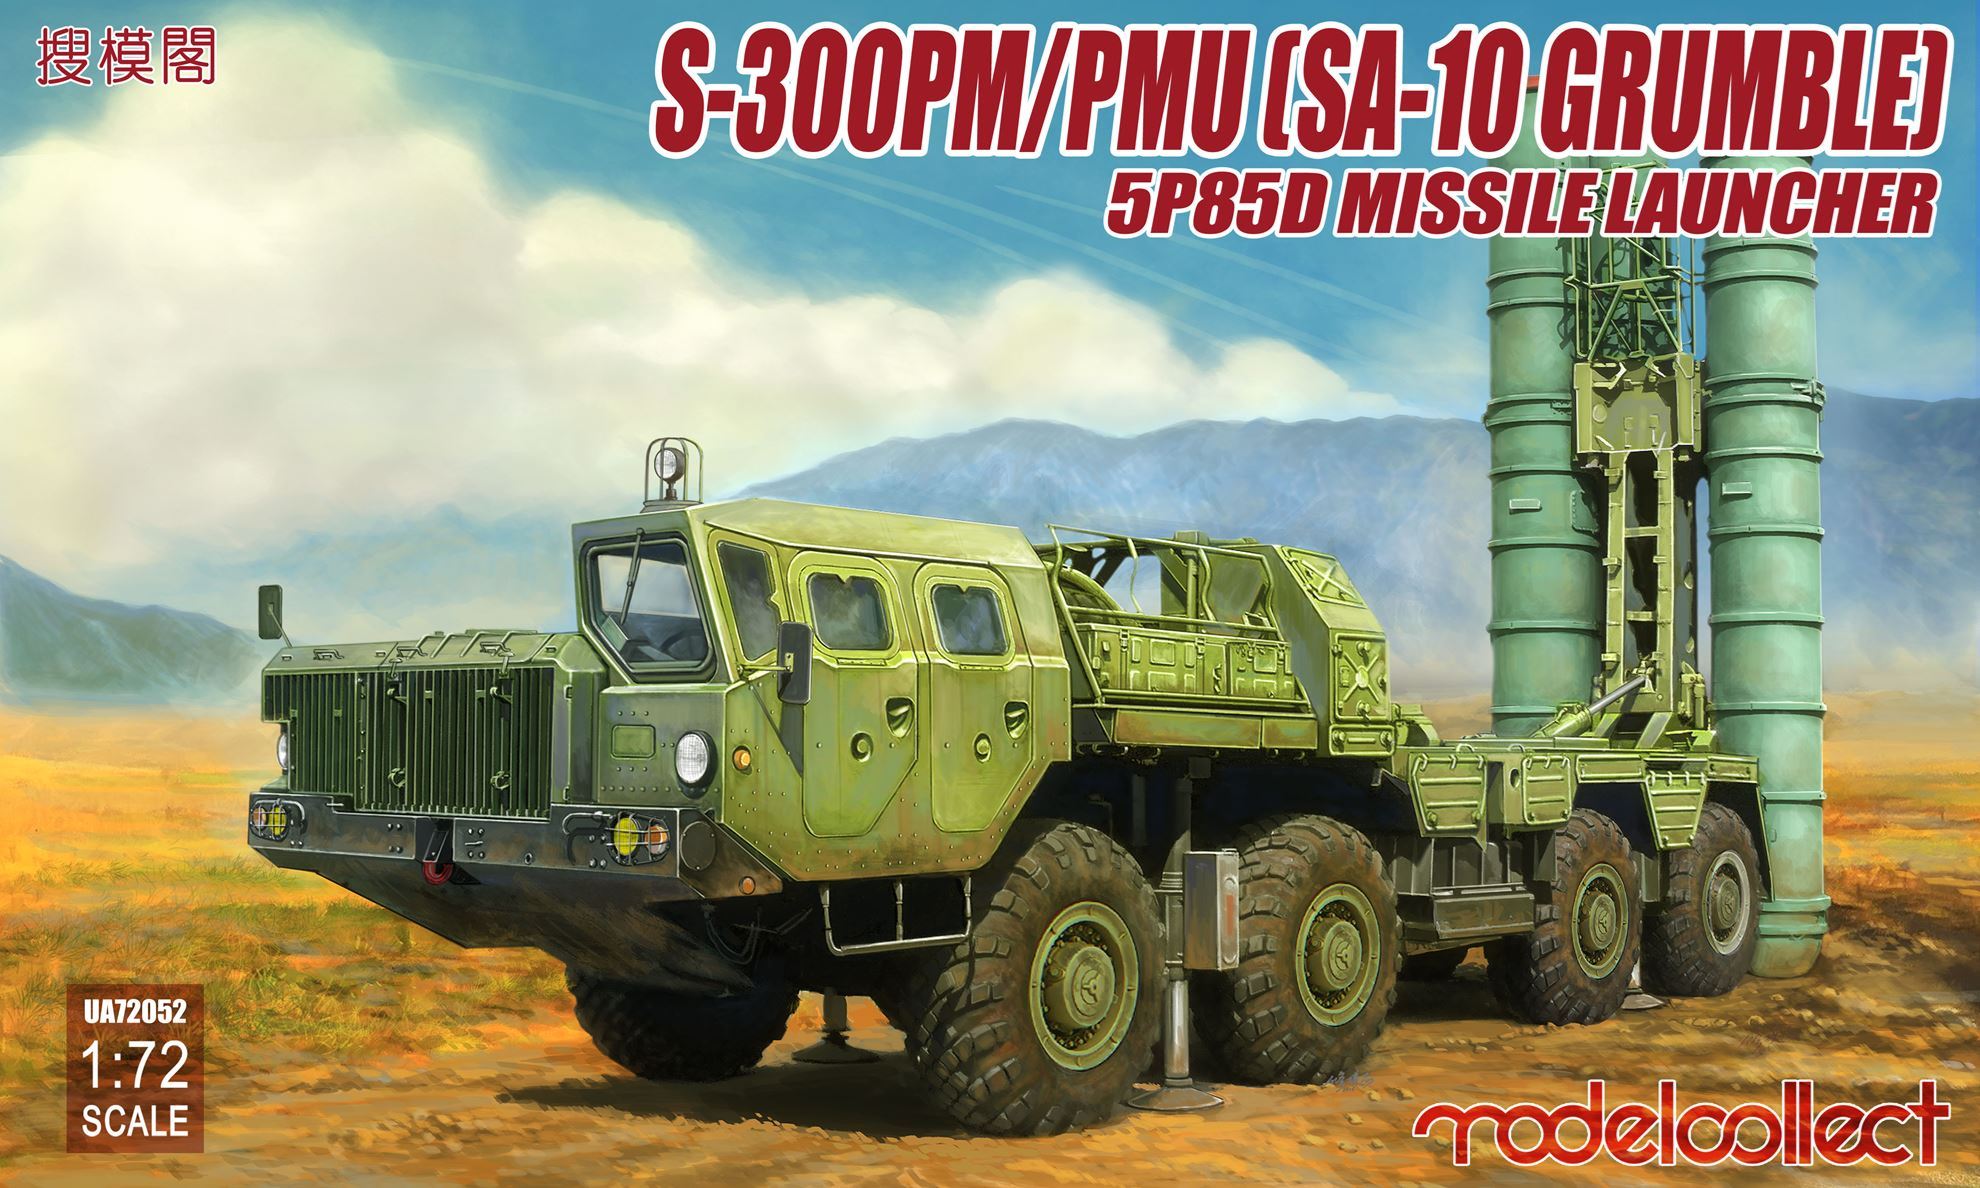 S-300PM/PMU (SA-10 Grumble), 5P85D Missile Launcher